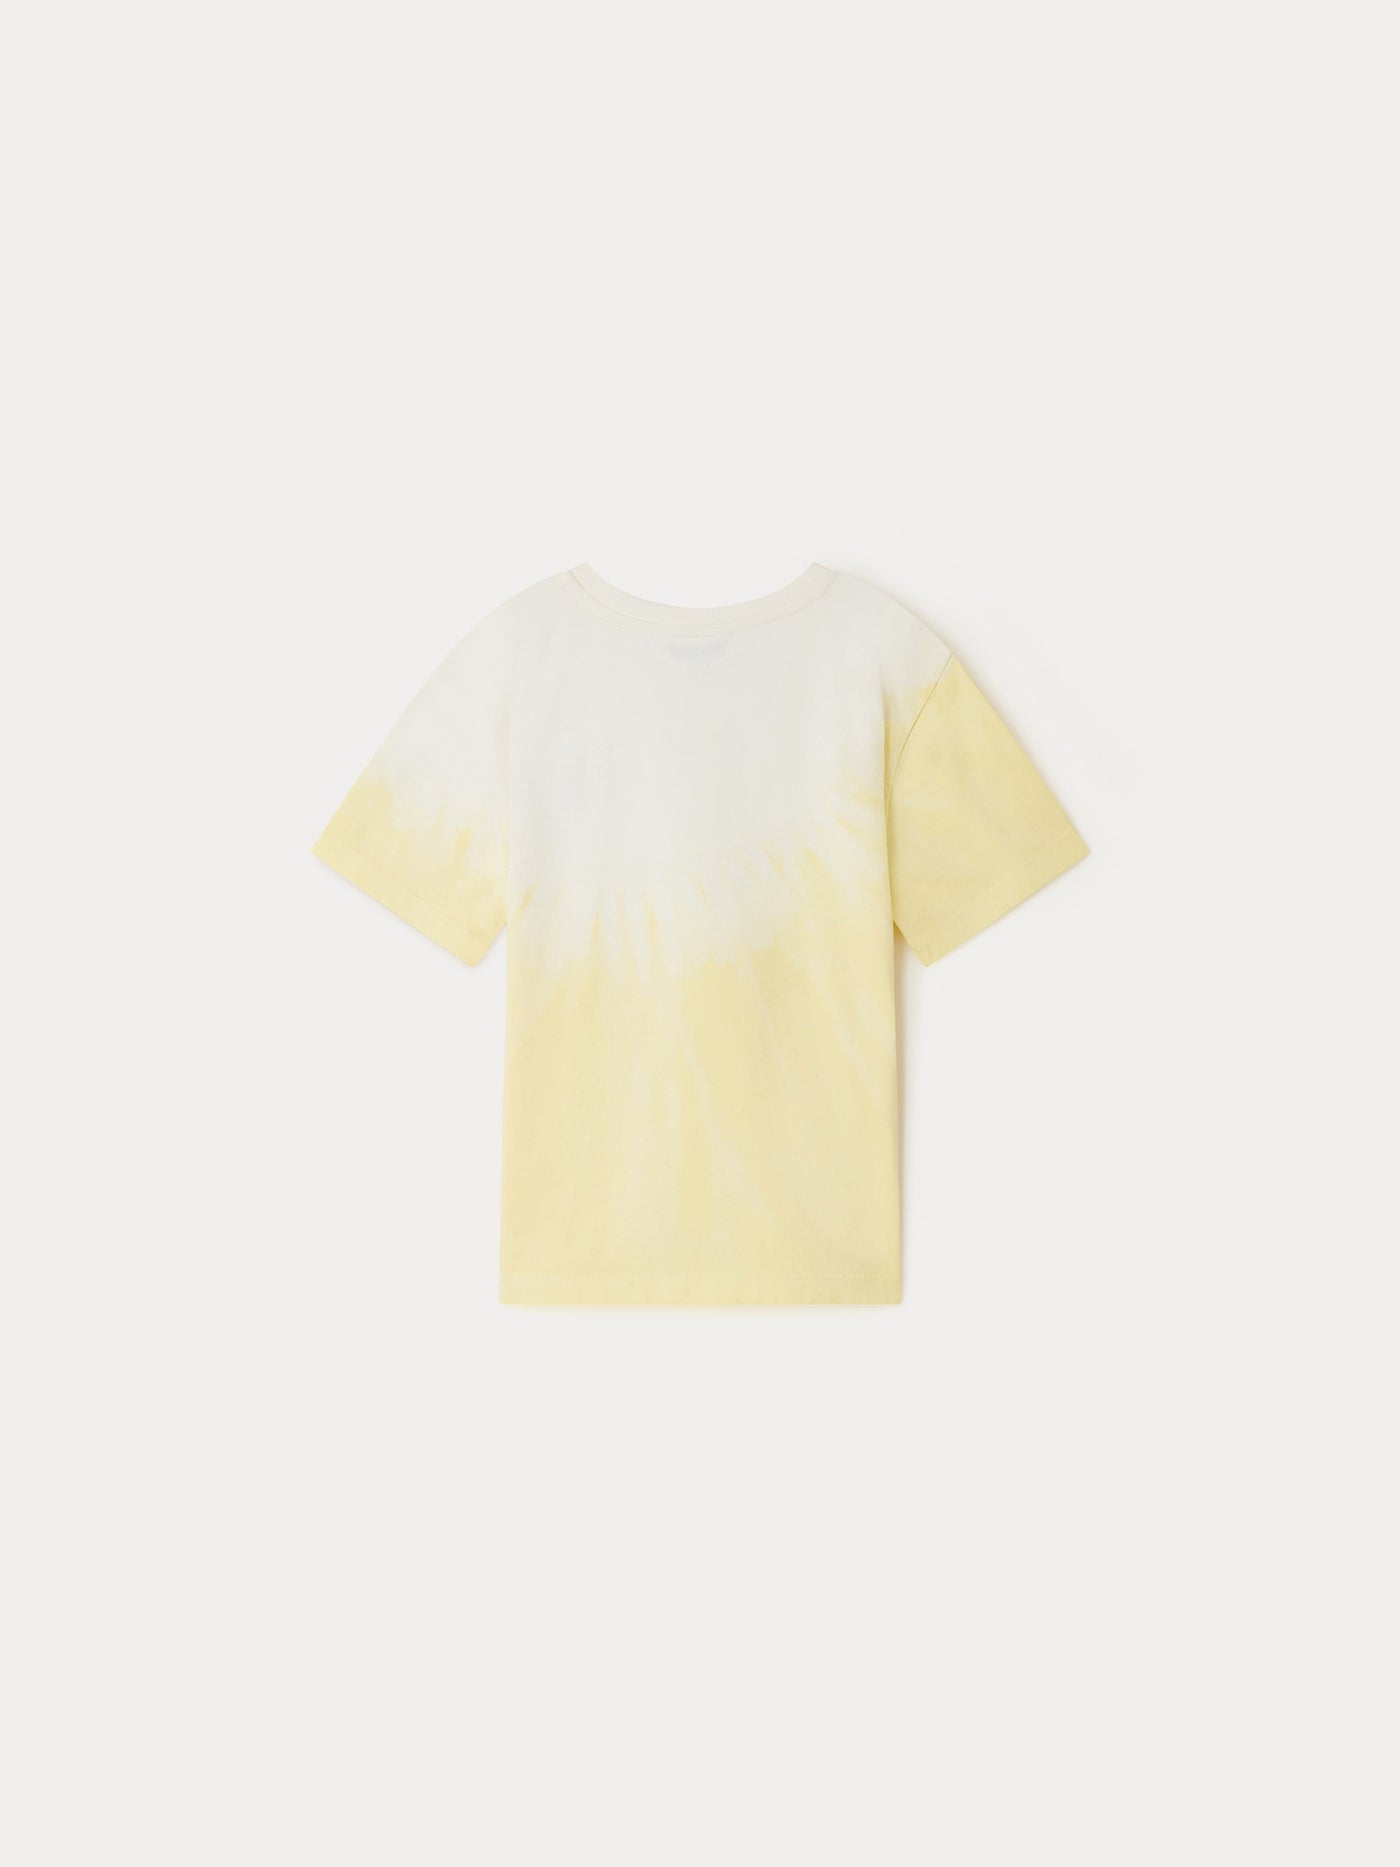 T-shirt Cian jaune clair